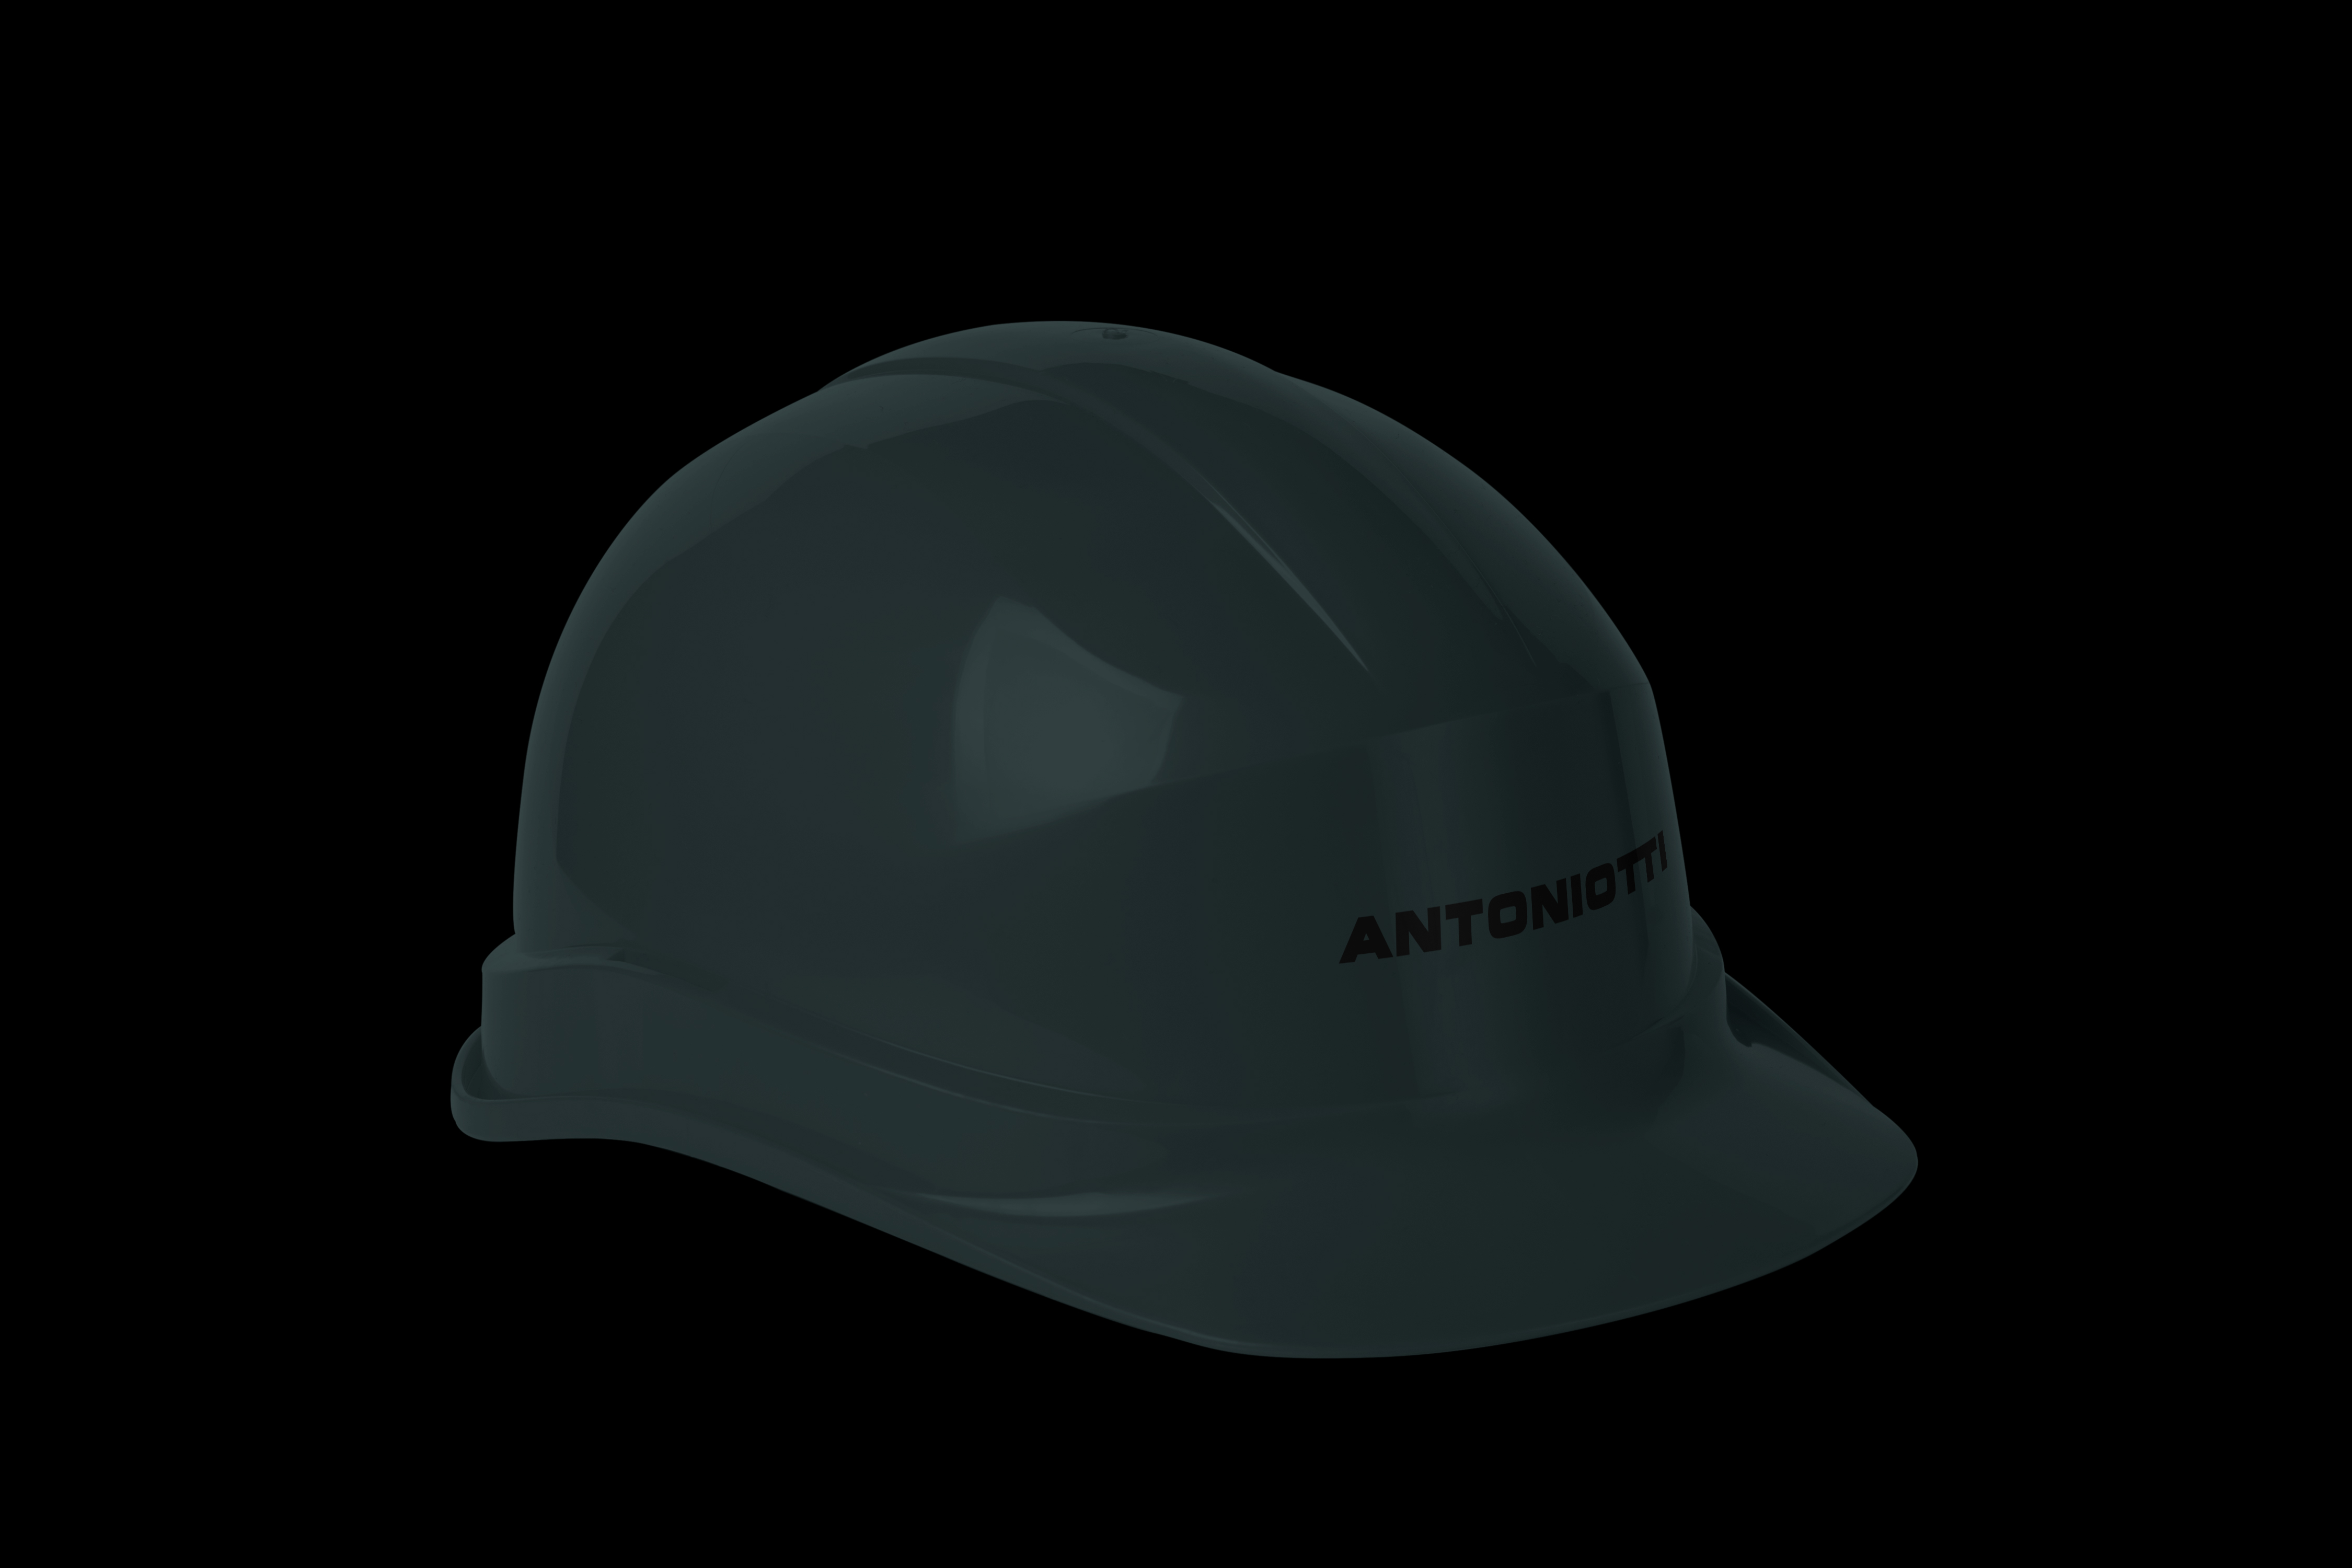 Construction-Helmet-Mockup